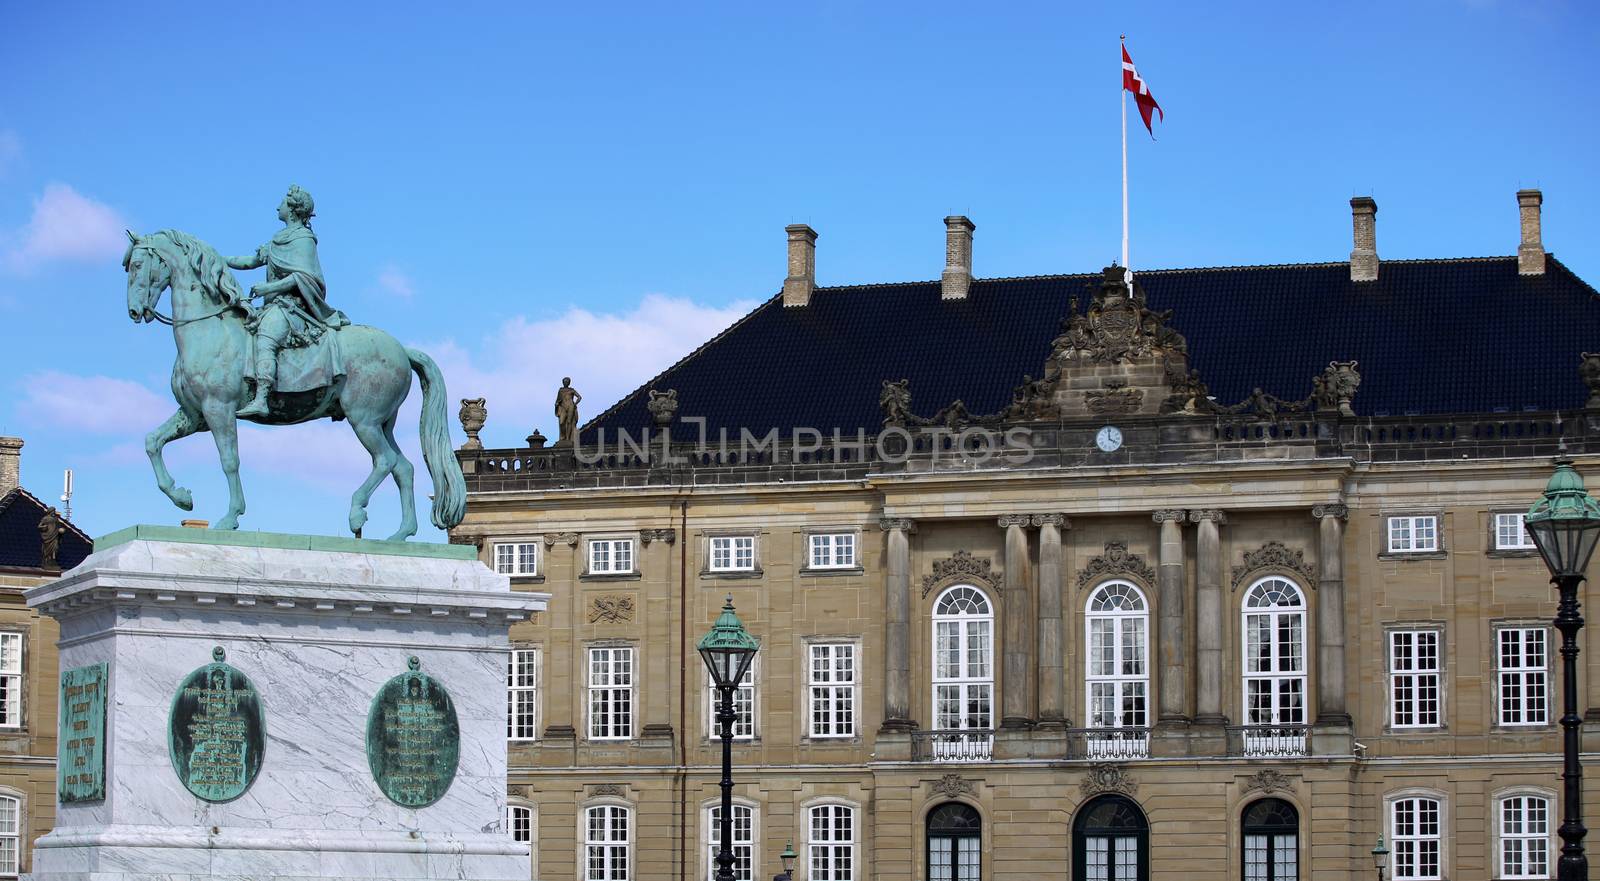 Sculpture of Frederik V on Horseback in Amalienborg Square in Copenhagen, Denmark